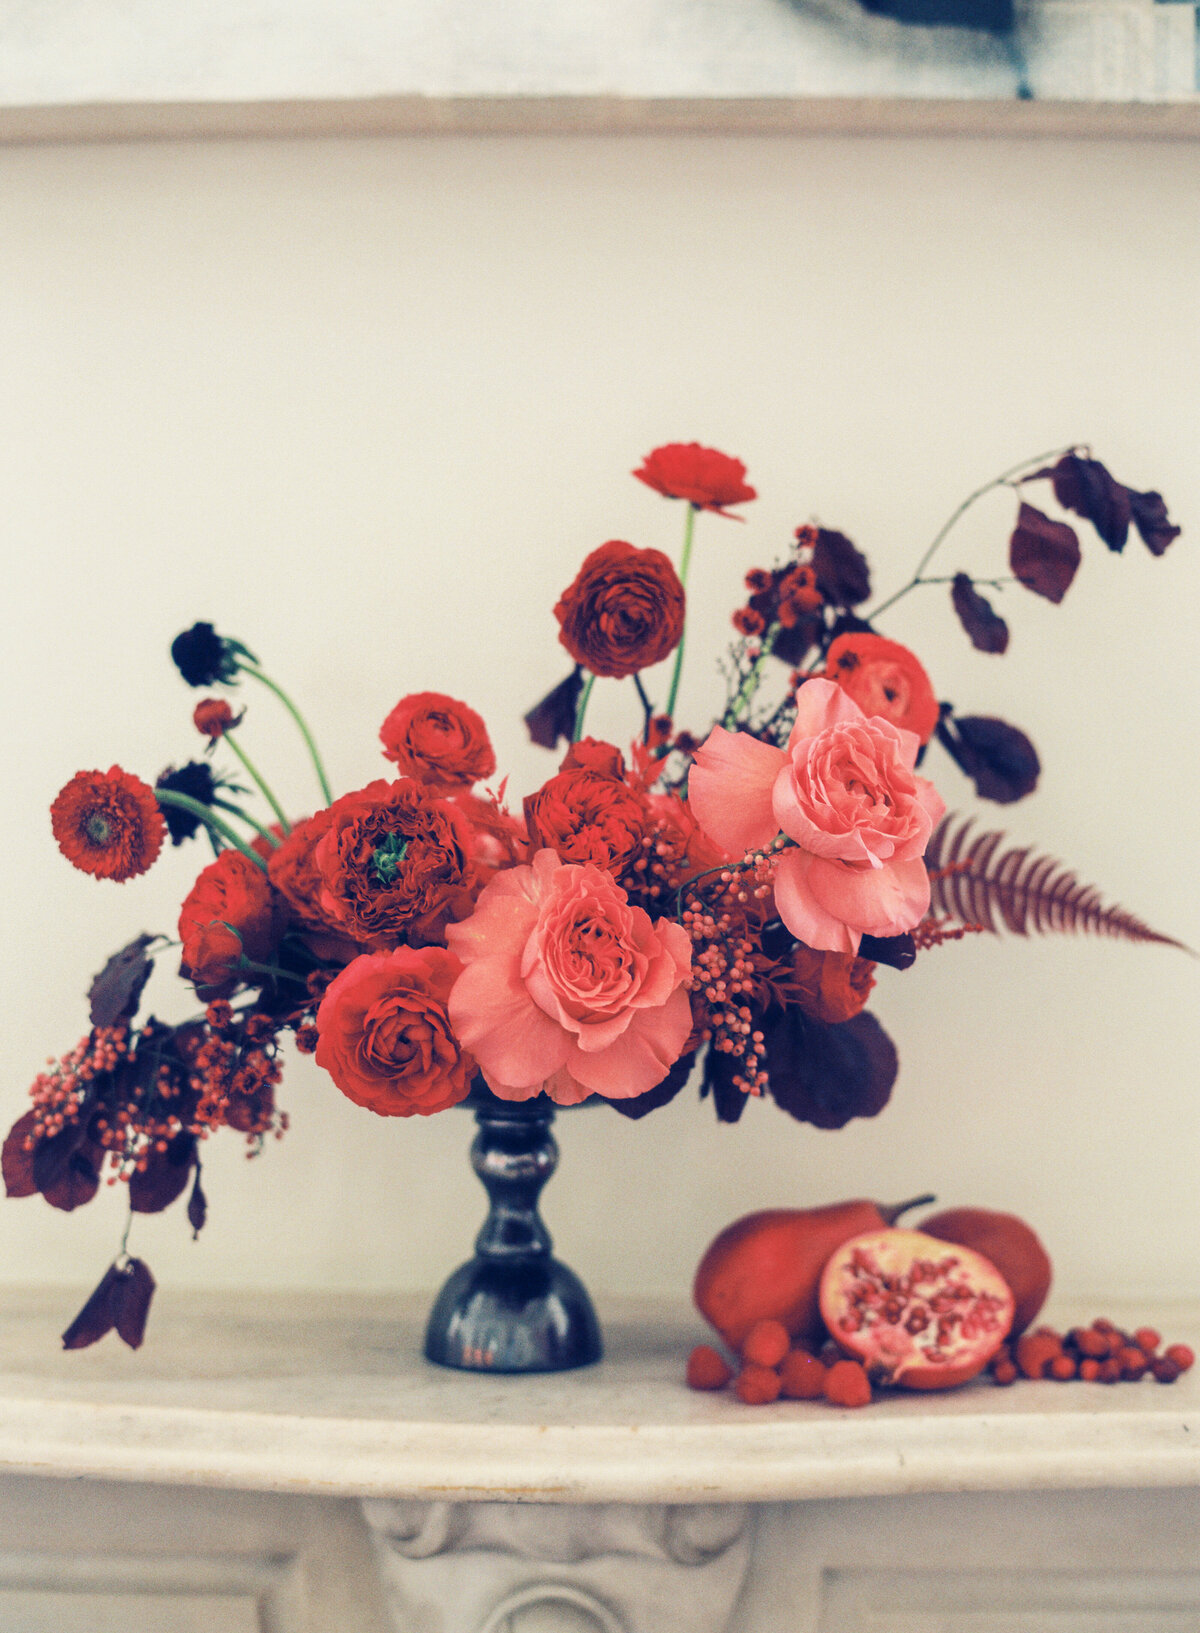 max-owens-design-new-orleans-florist-08-floral-arrangement